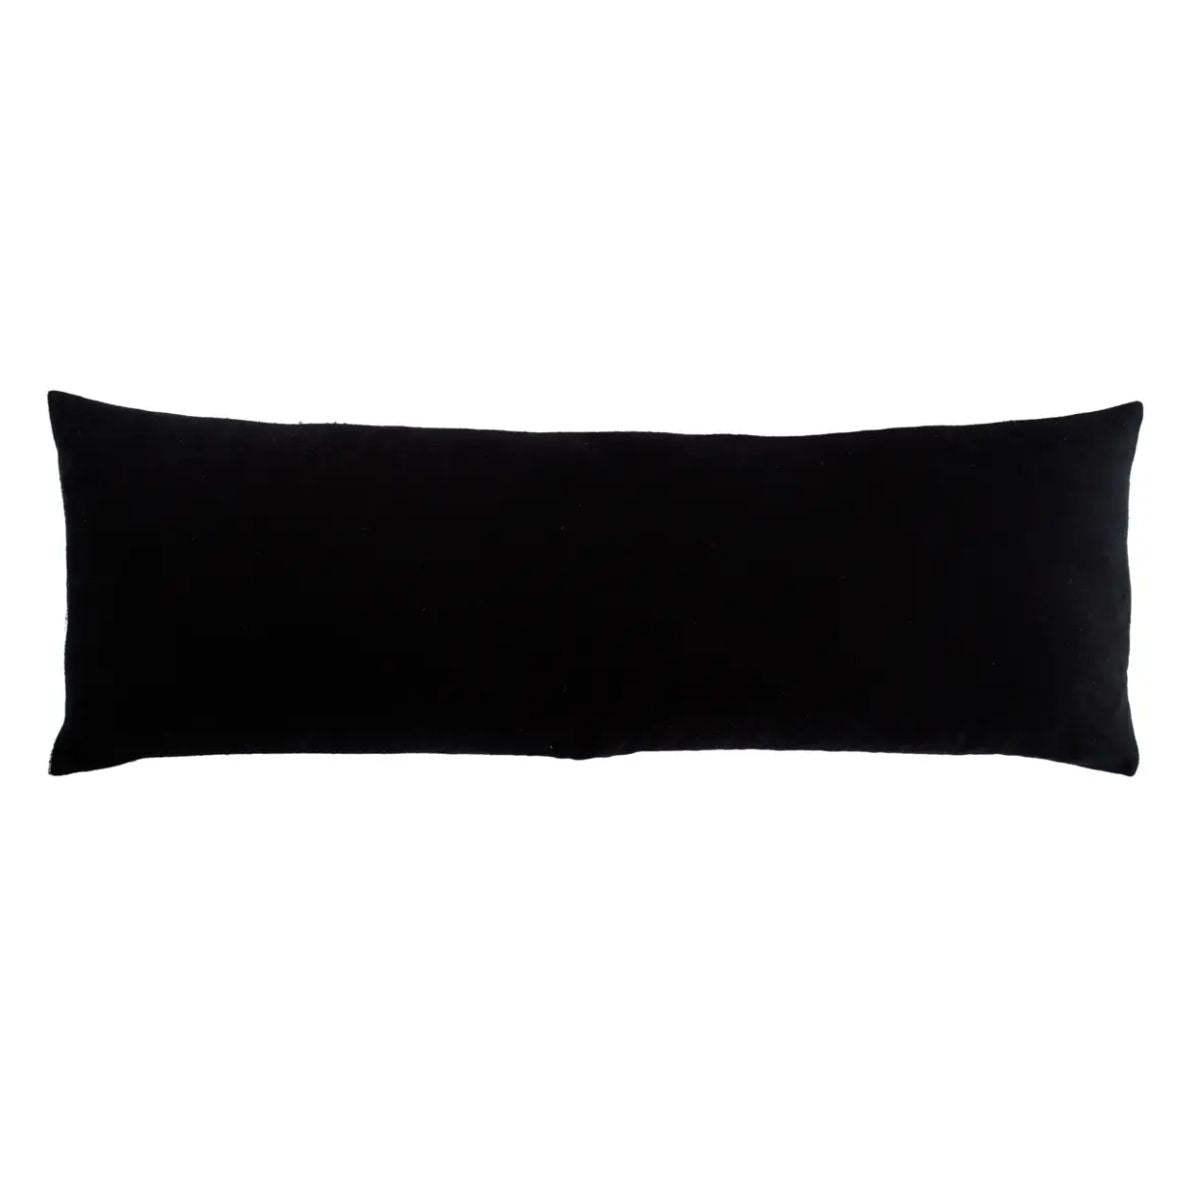 Rawcliffe Lumbar Pillow